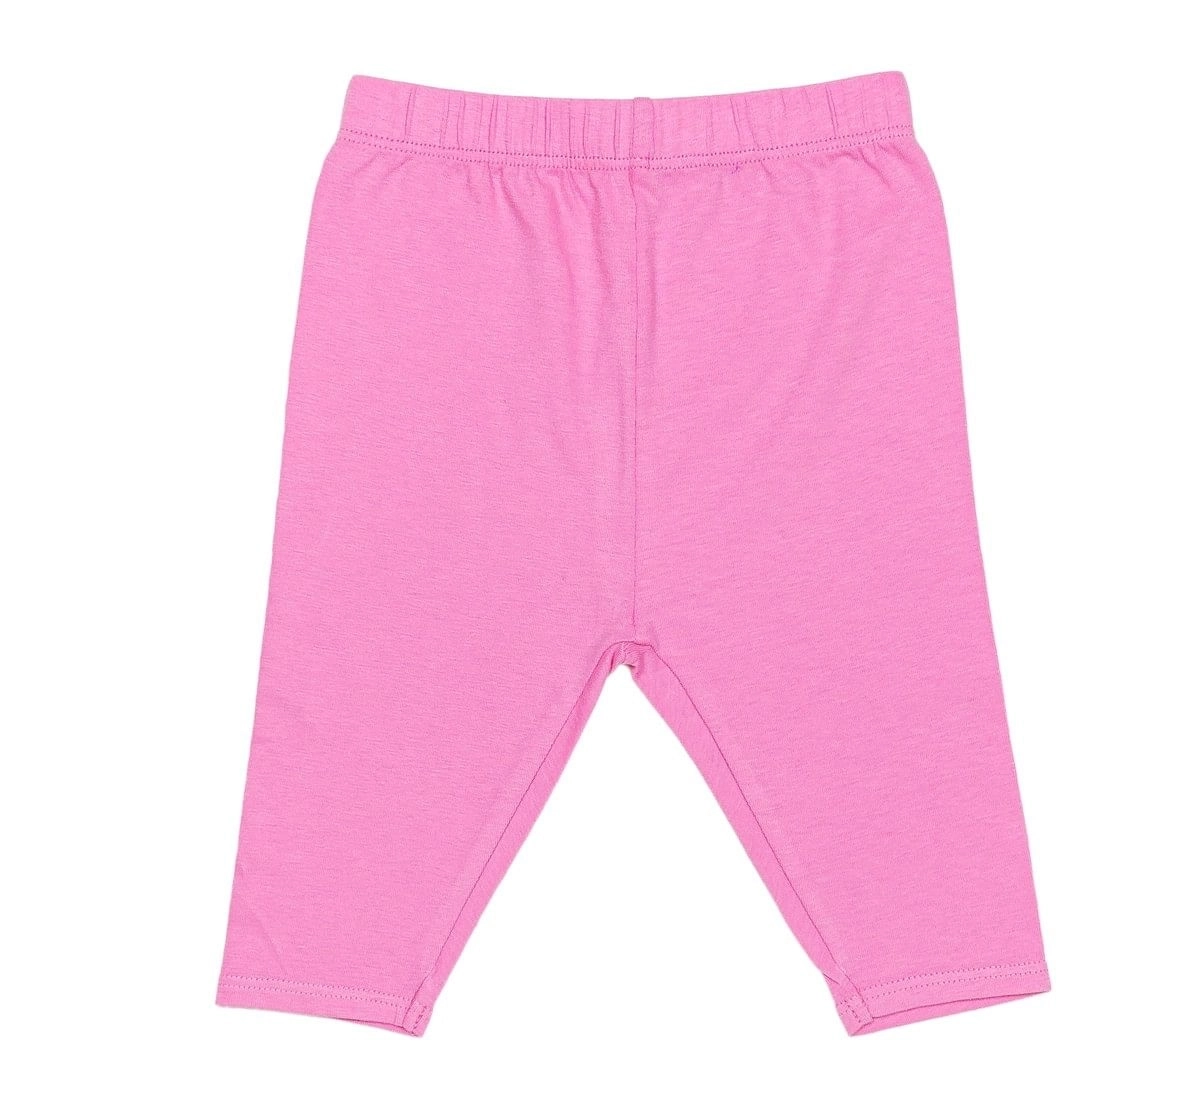 Girls Leggings | Shop Leggings For Girls & Toddlers Online - Mila & Rose -  Mila & Rose ®